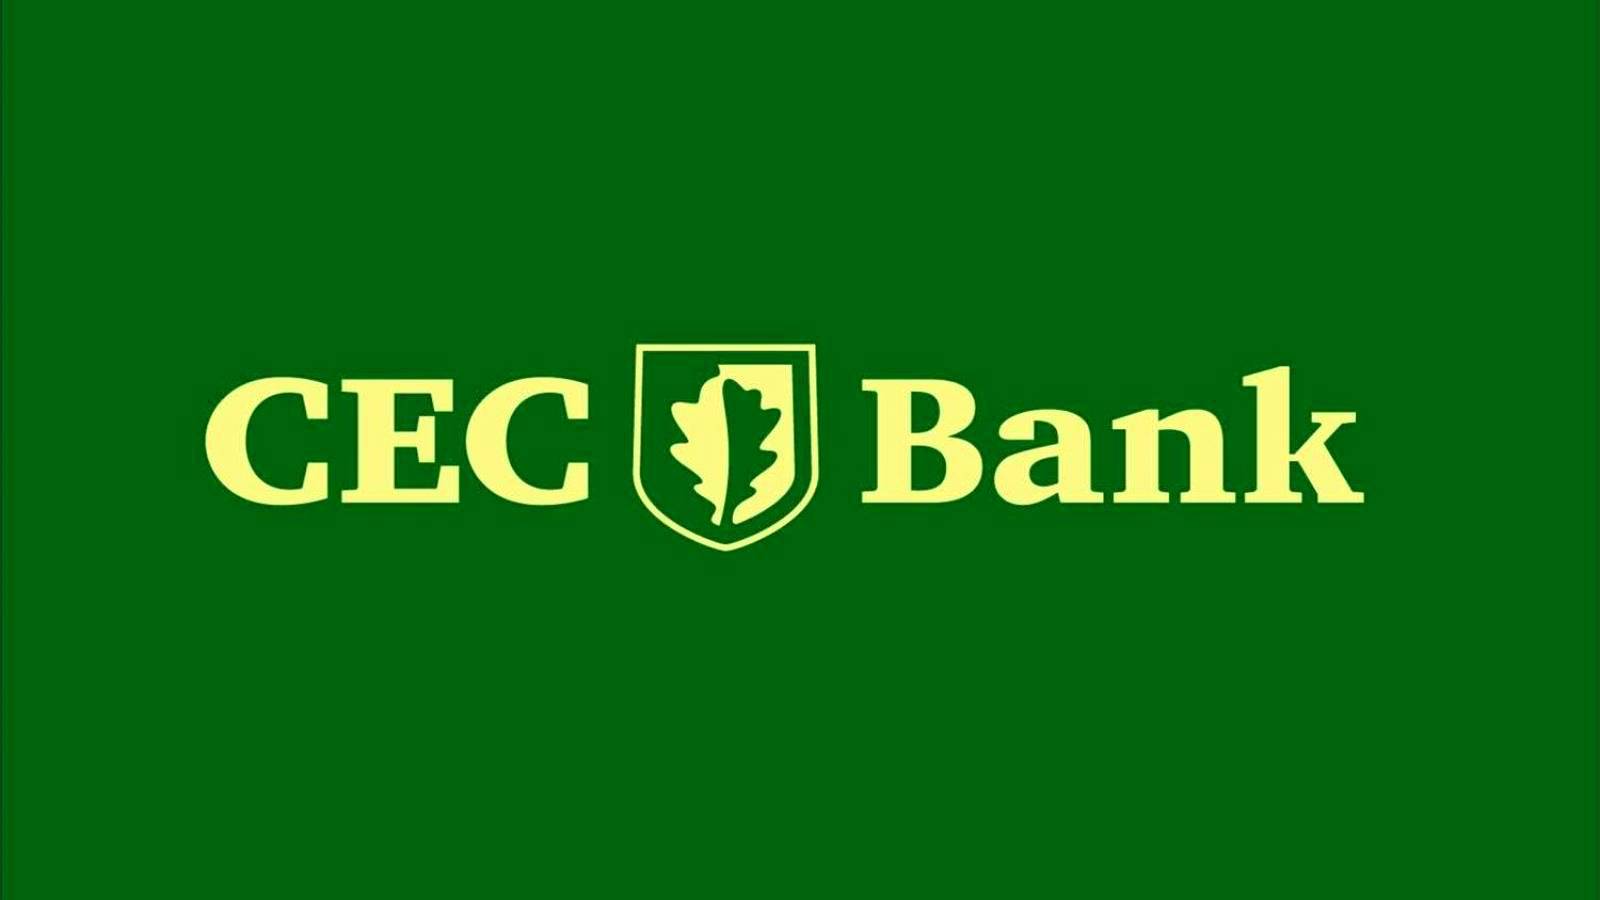 CEC Bank VIGTIG beslutning for kunder officielt annonceret